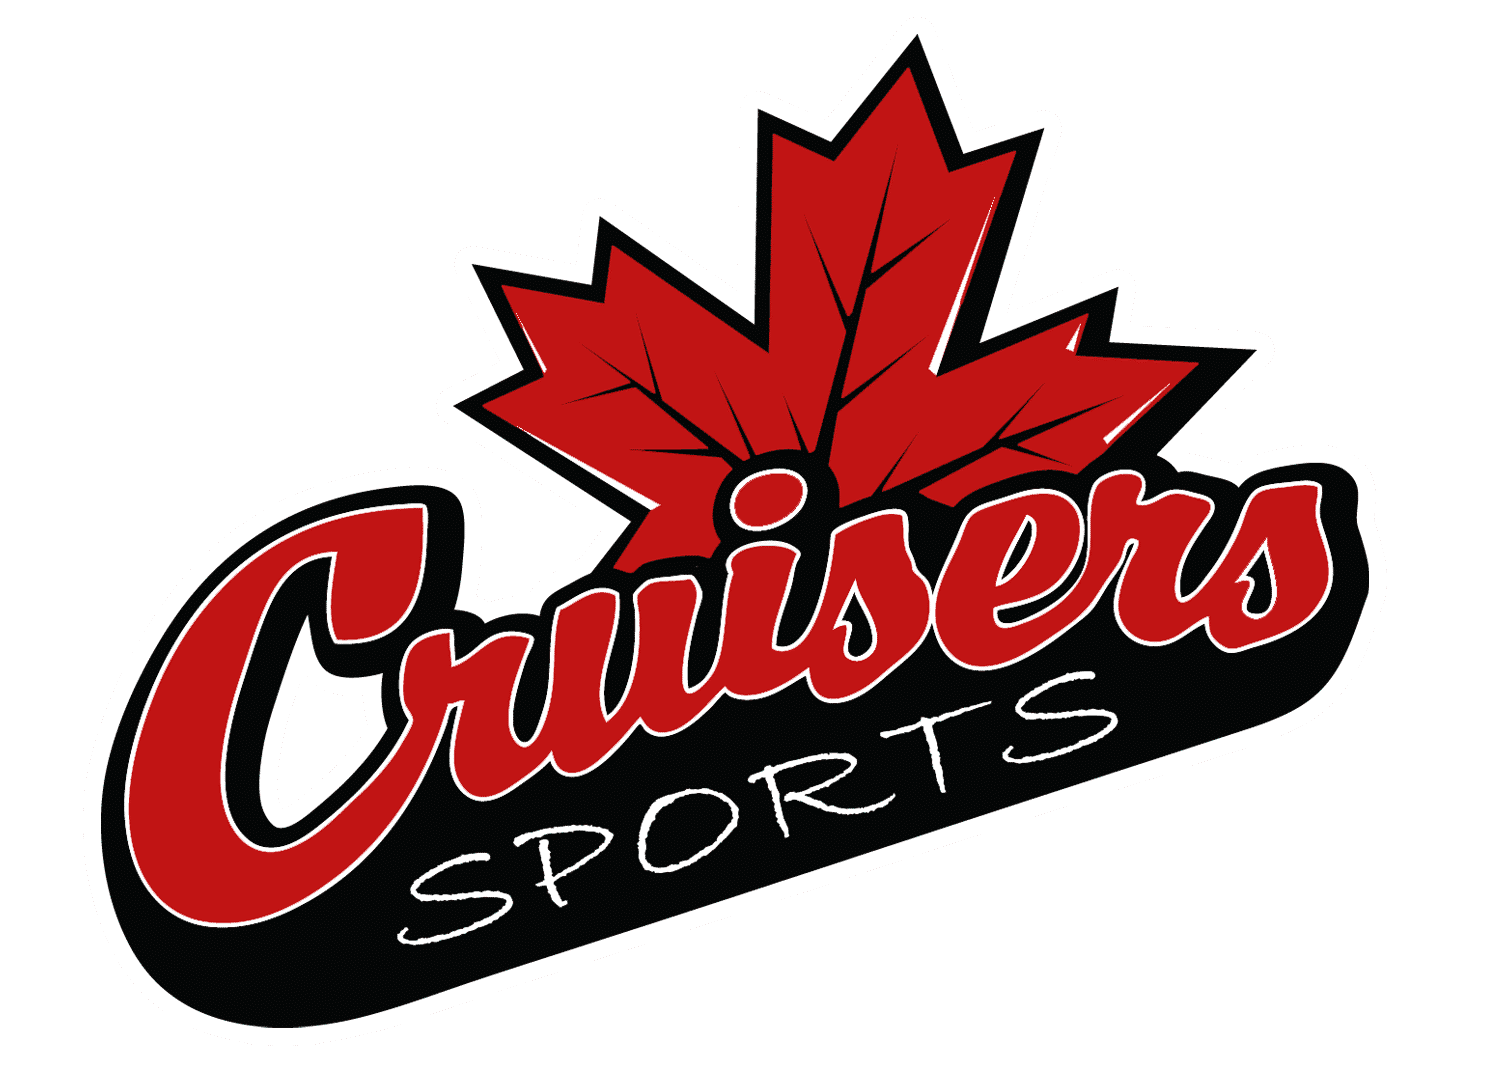 Cruiser sports logo